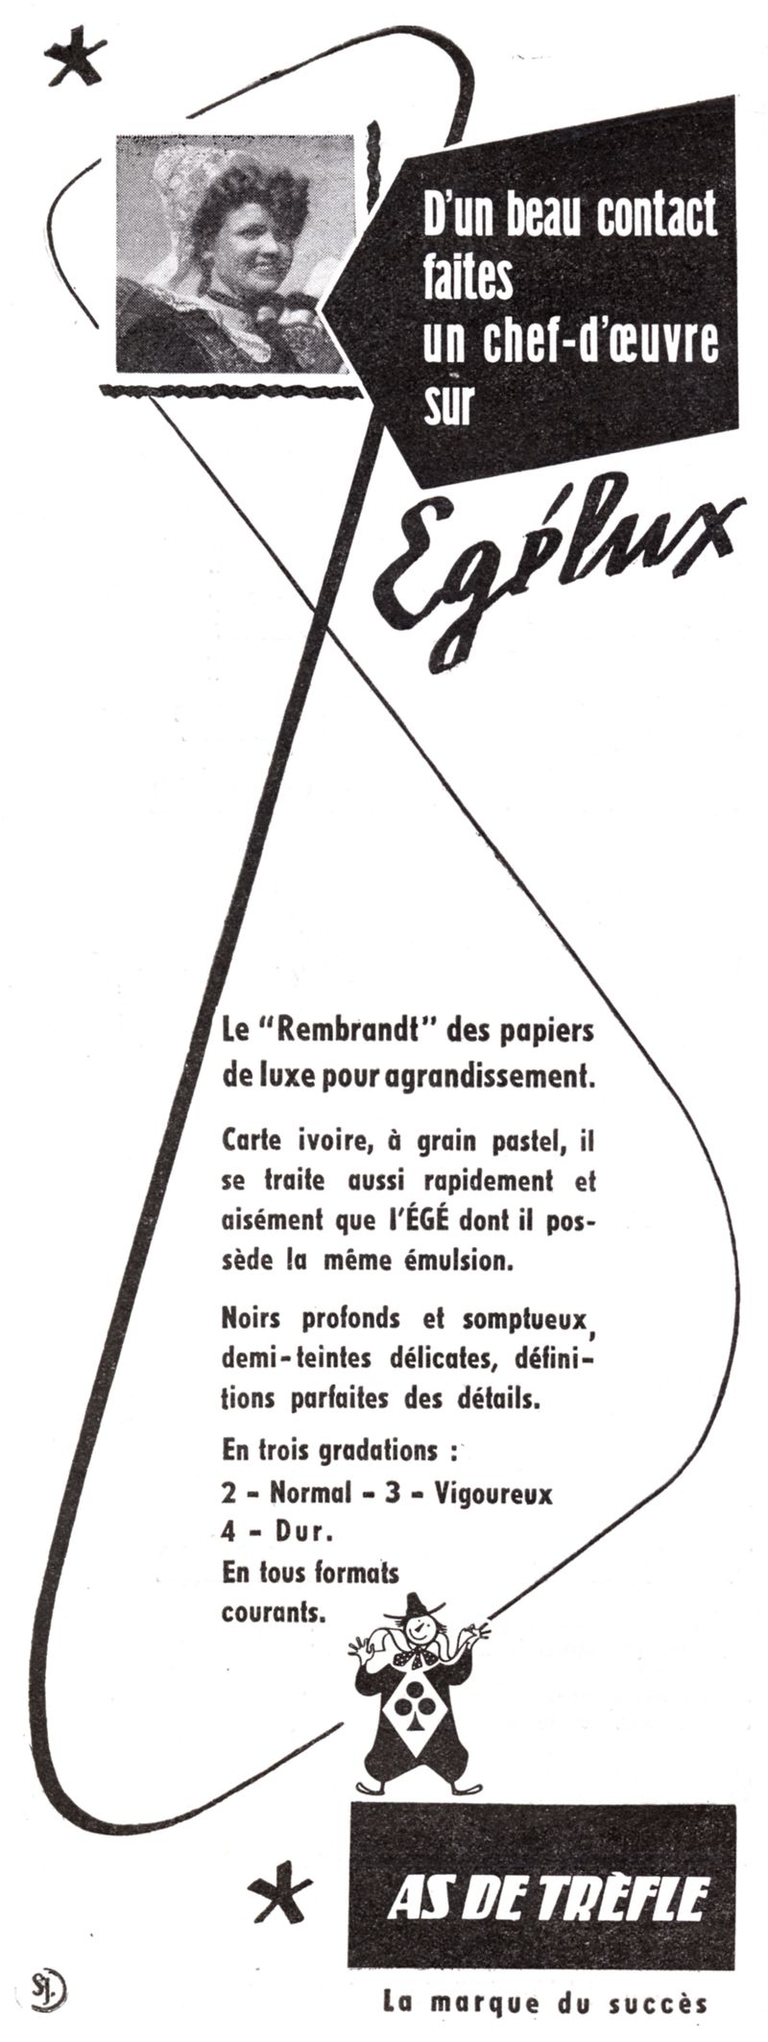 As de Trèfle - Papier Egélux - 1950